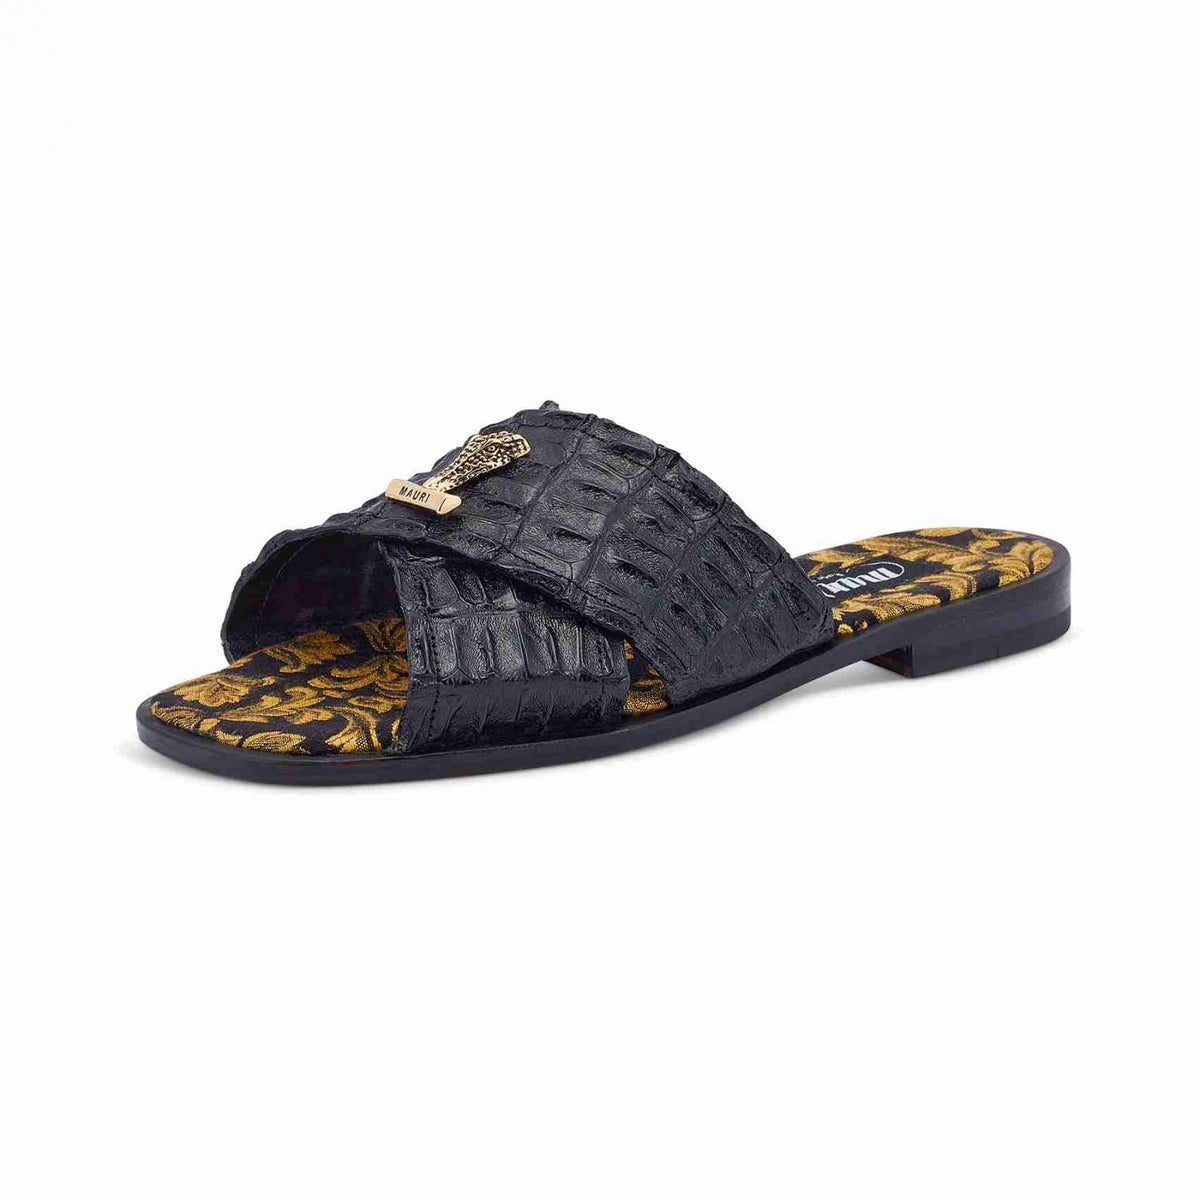 Mauri 5134 Black/Gold Crocodile Sandals - Dudes Boutique